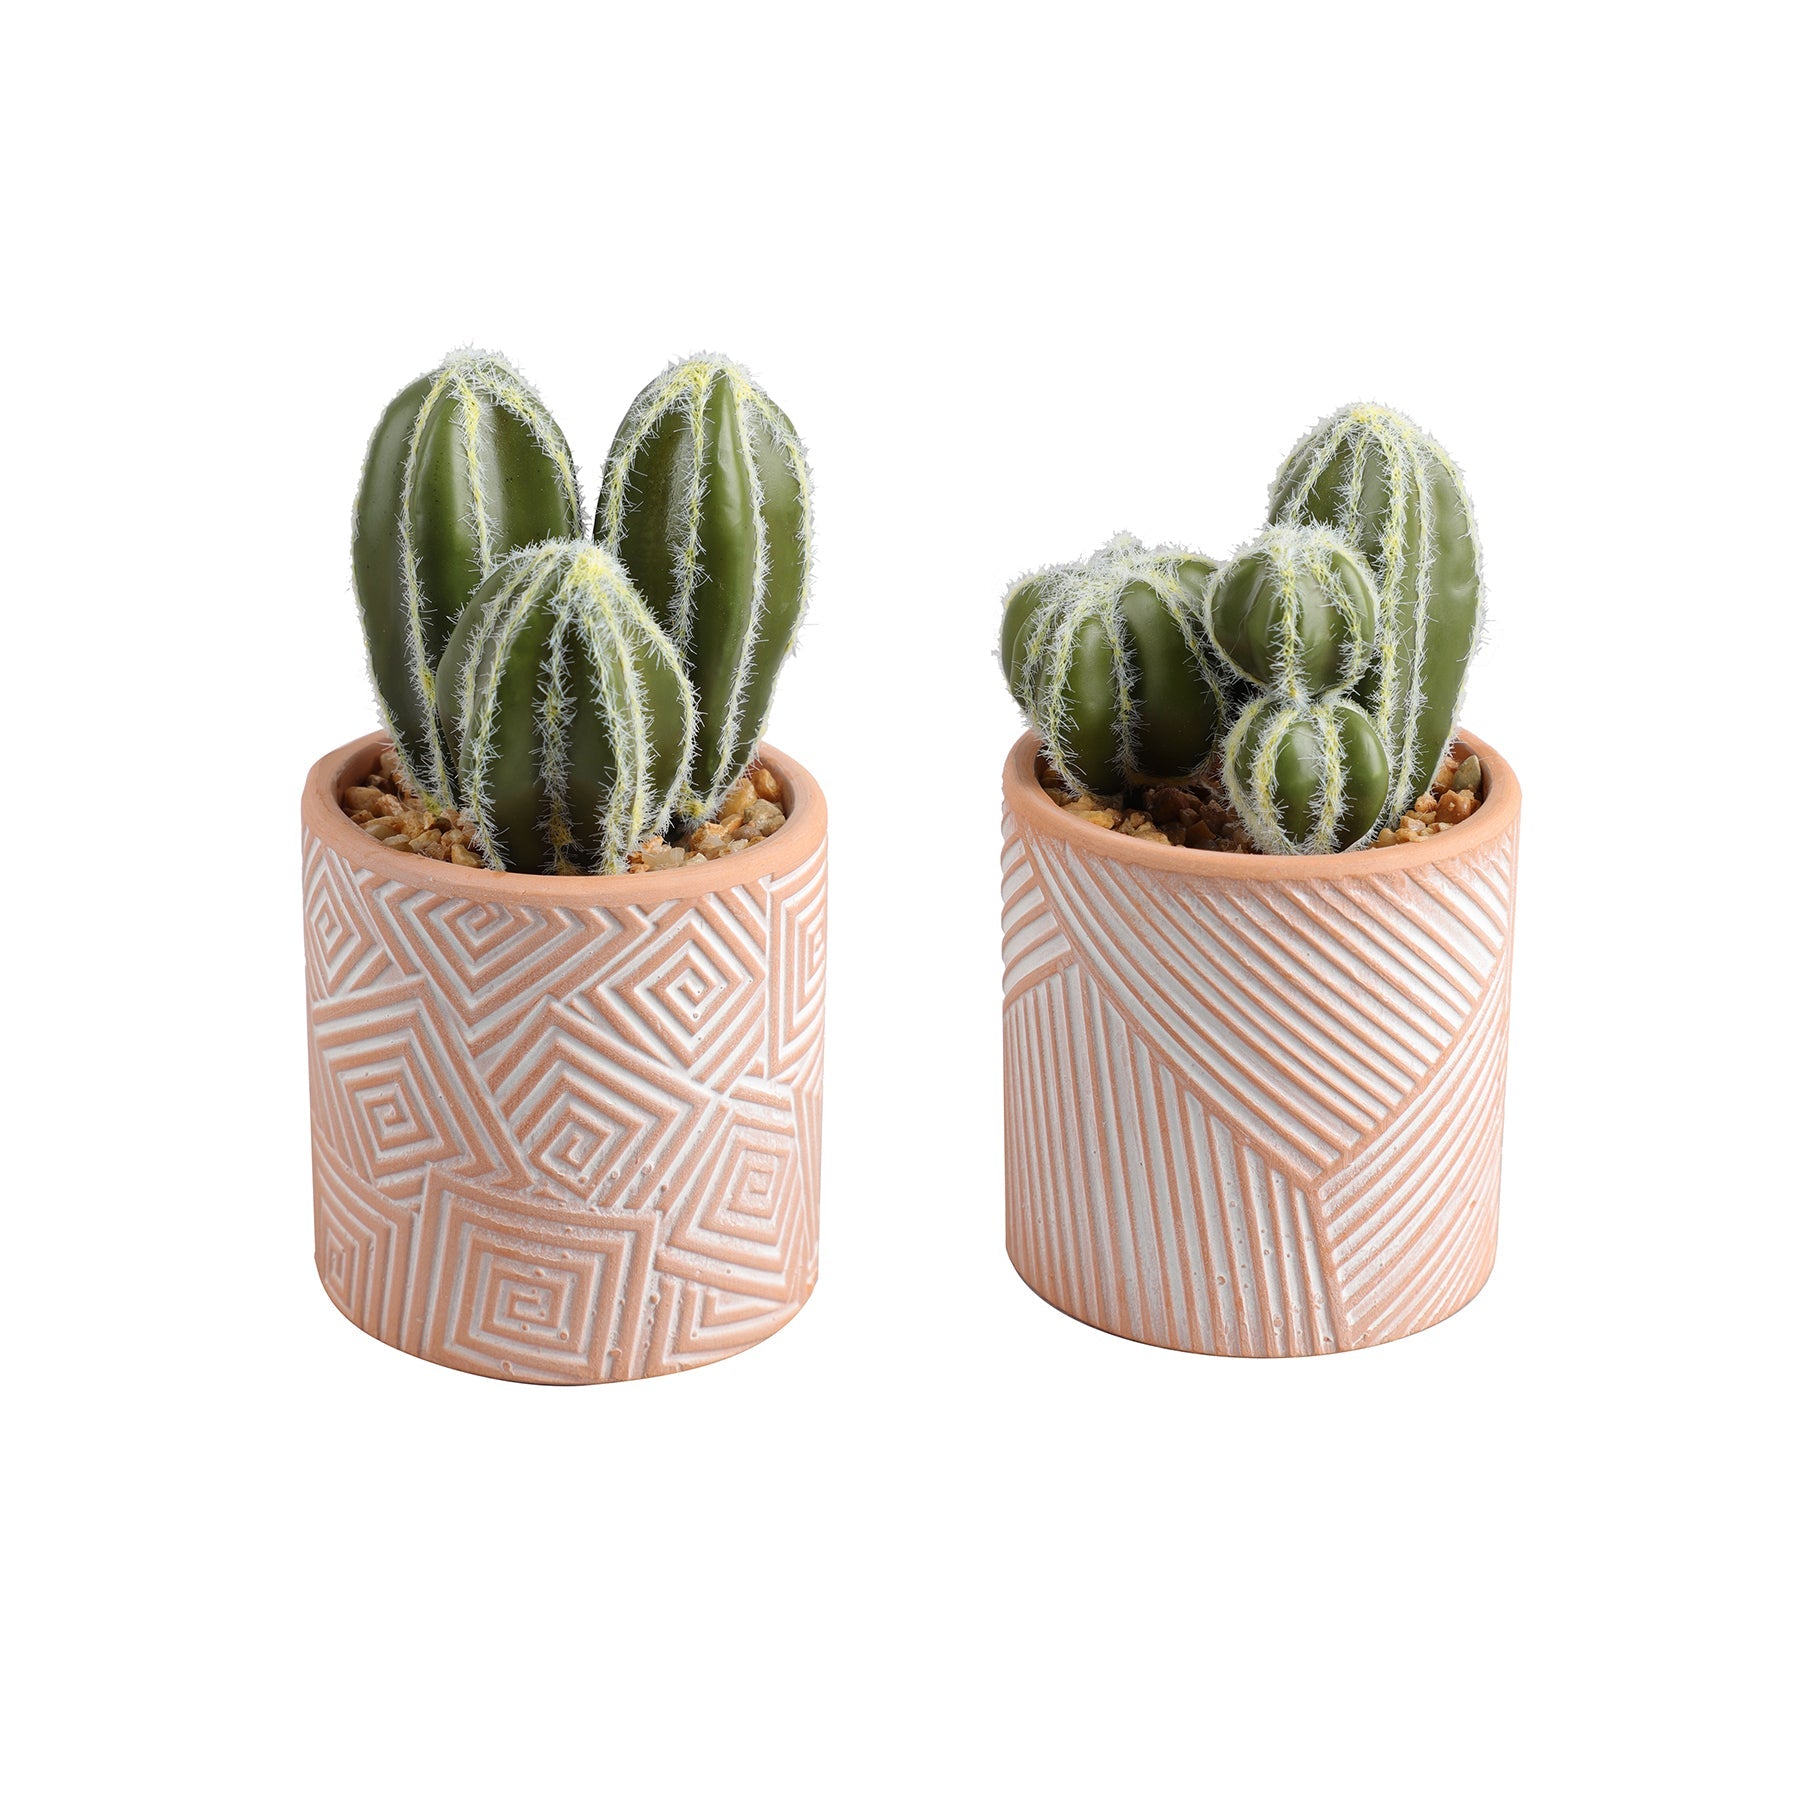 Foam Cactus in Terracotta Pot 5.5in